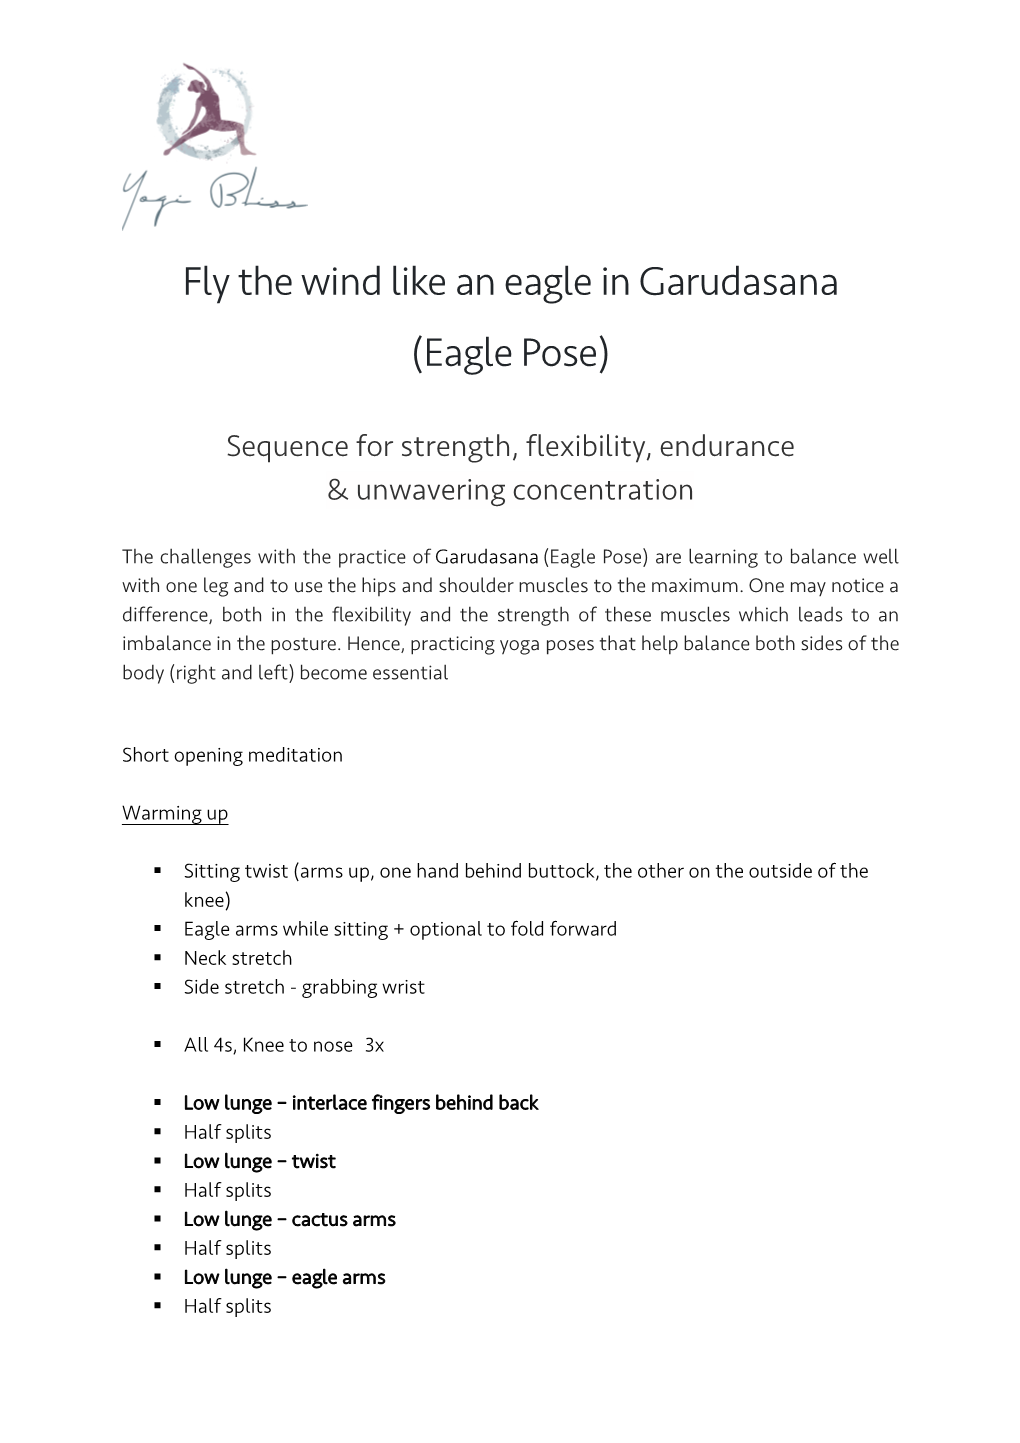 Fly the Wind Like an Eagle in Garudasana (Eagle Pose)